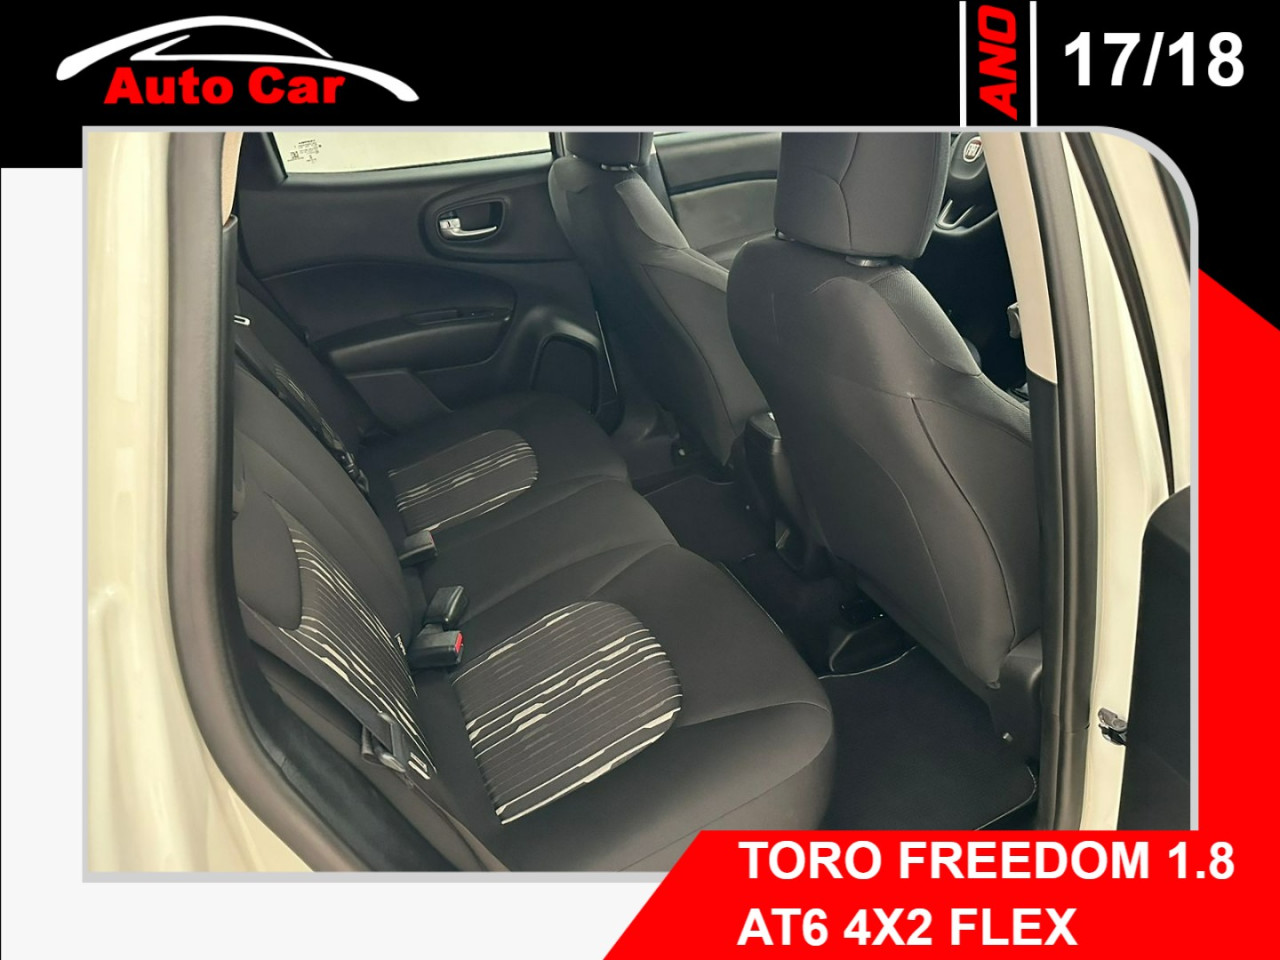 Toro 1.8 16V 4P FLEX FREEDOM AUTOMÁTICO